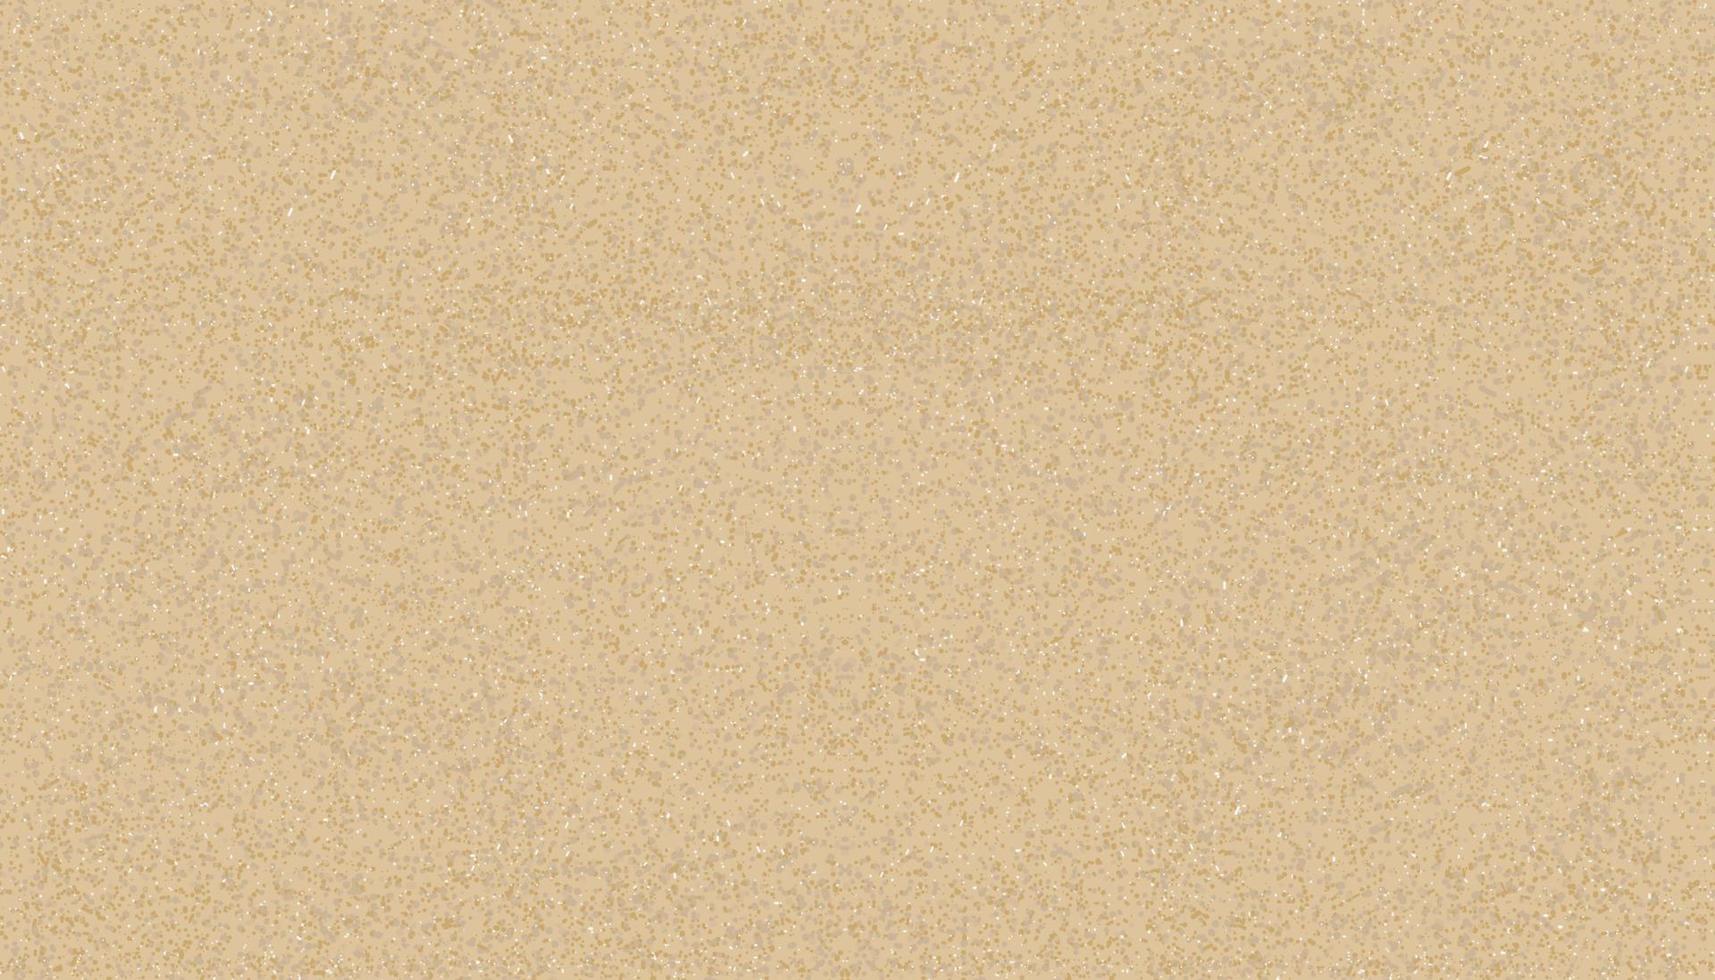 playa de arena perfecta para el fondo. ilustración vectorial patrón de textura de arena, telón de fondo duna de arena de playa marrón interminable para el fondo de la pancarta de verano. vector